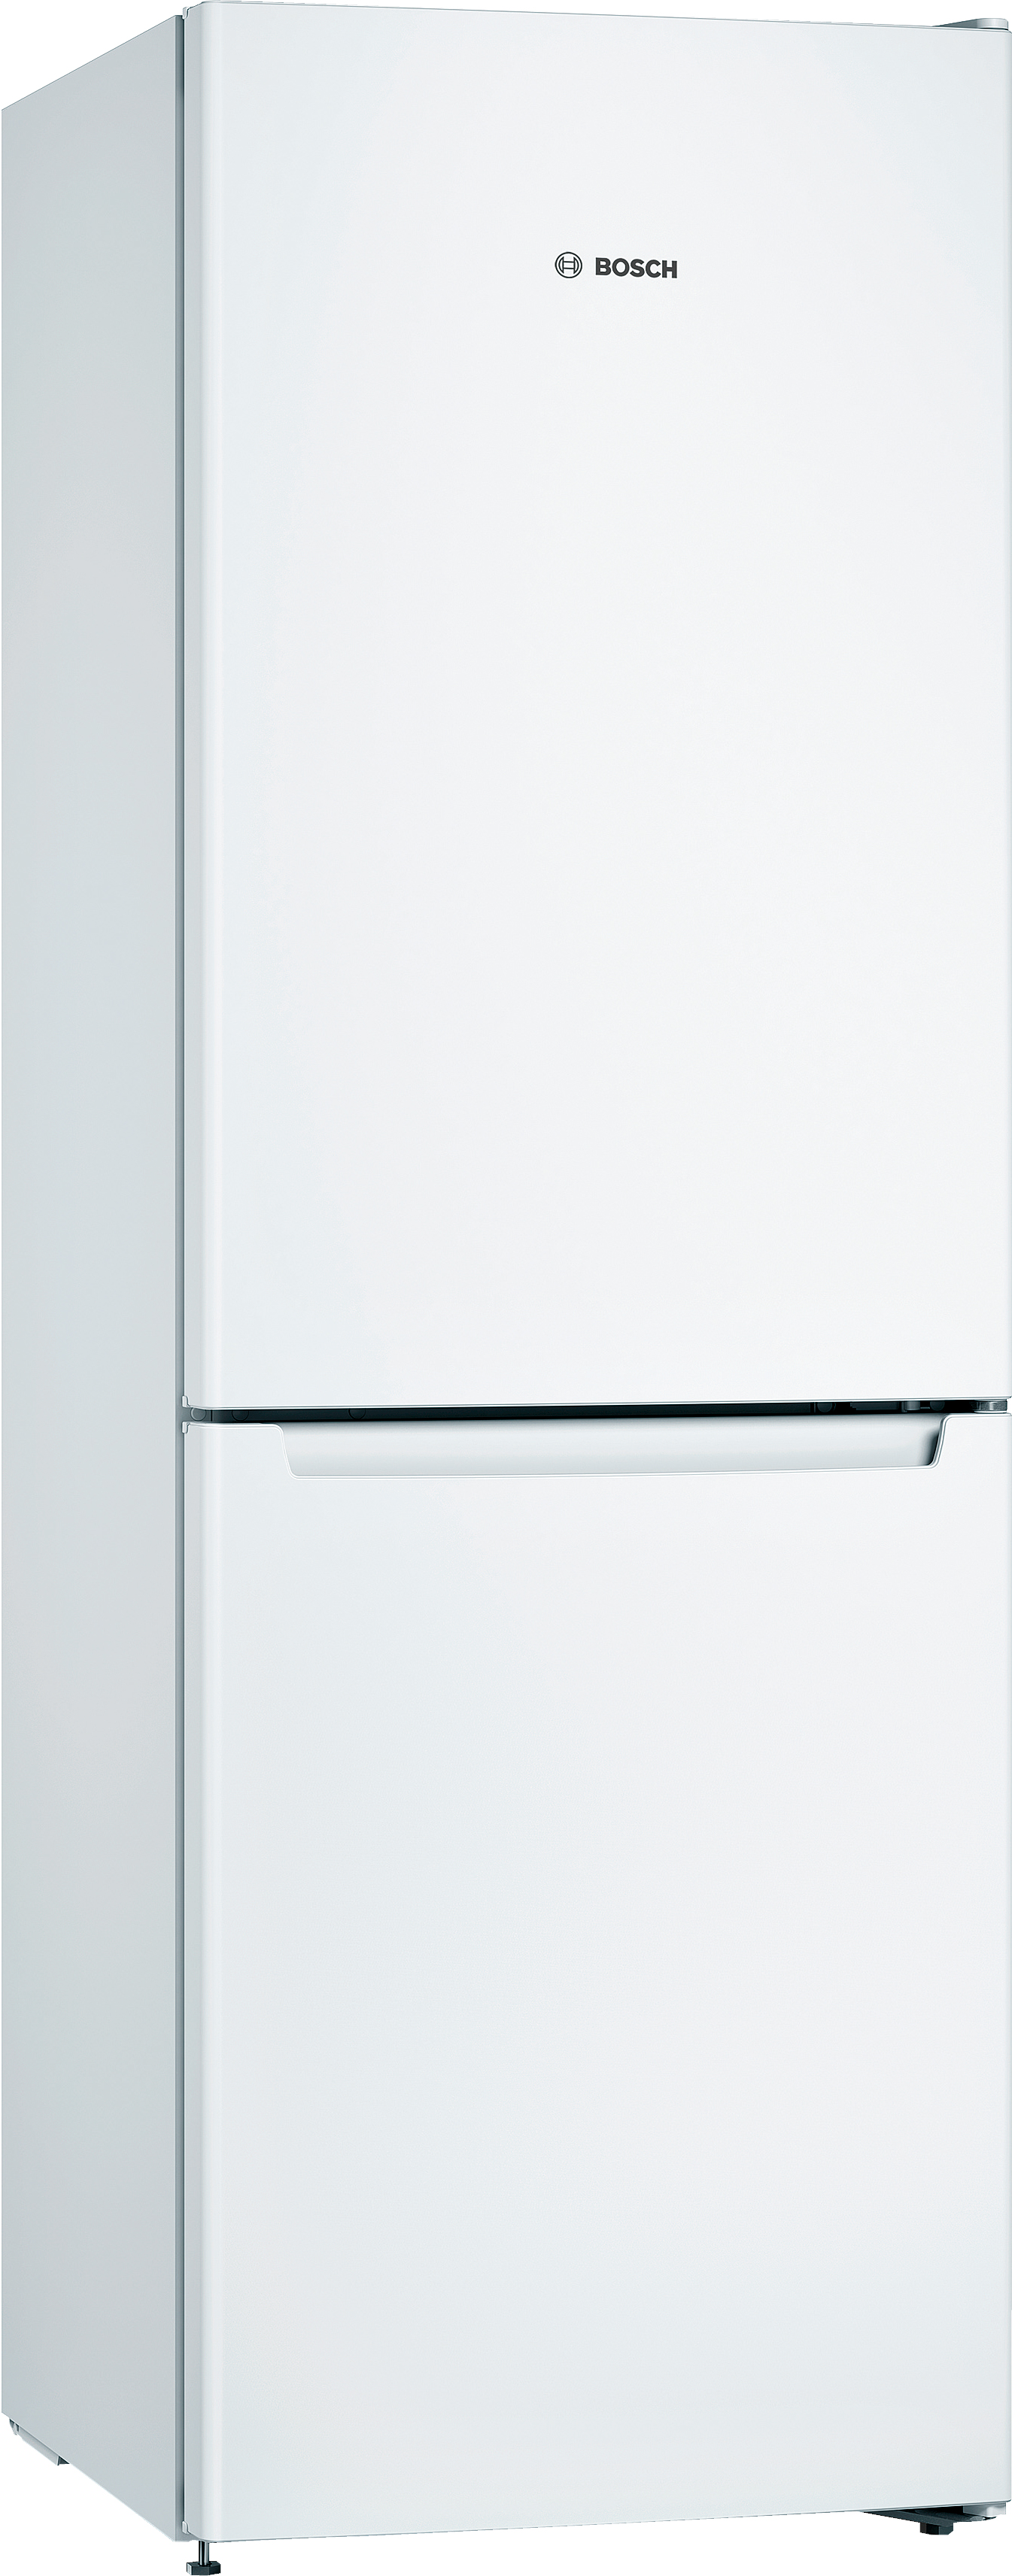 Холодильник Bosch KGN33NW206 в интернет-магазине, главное фото